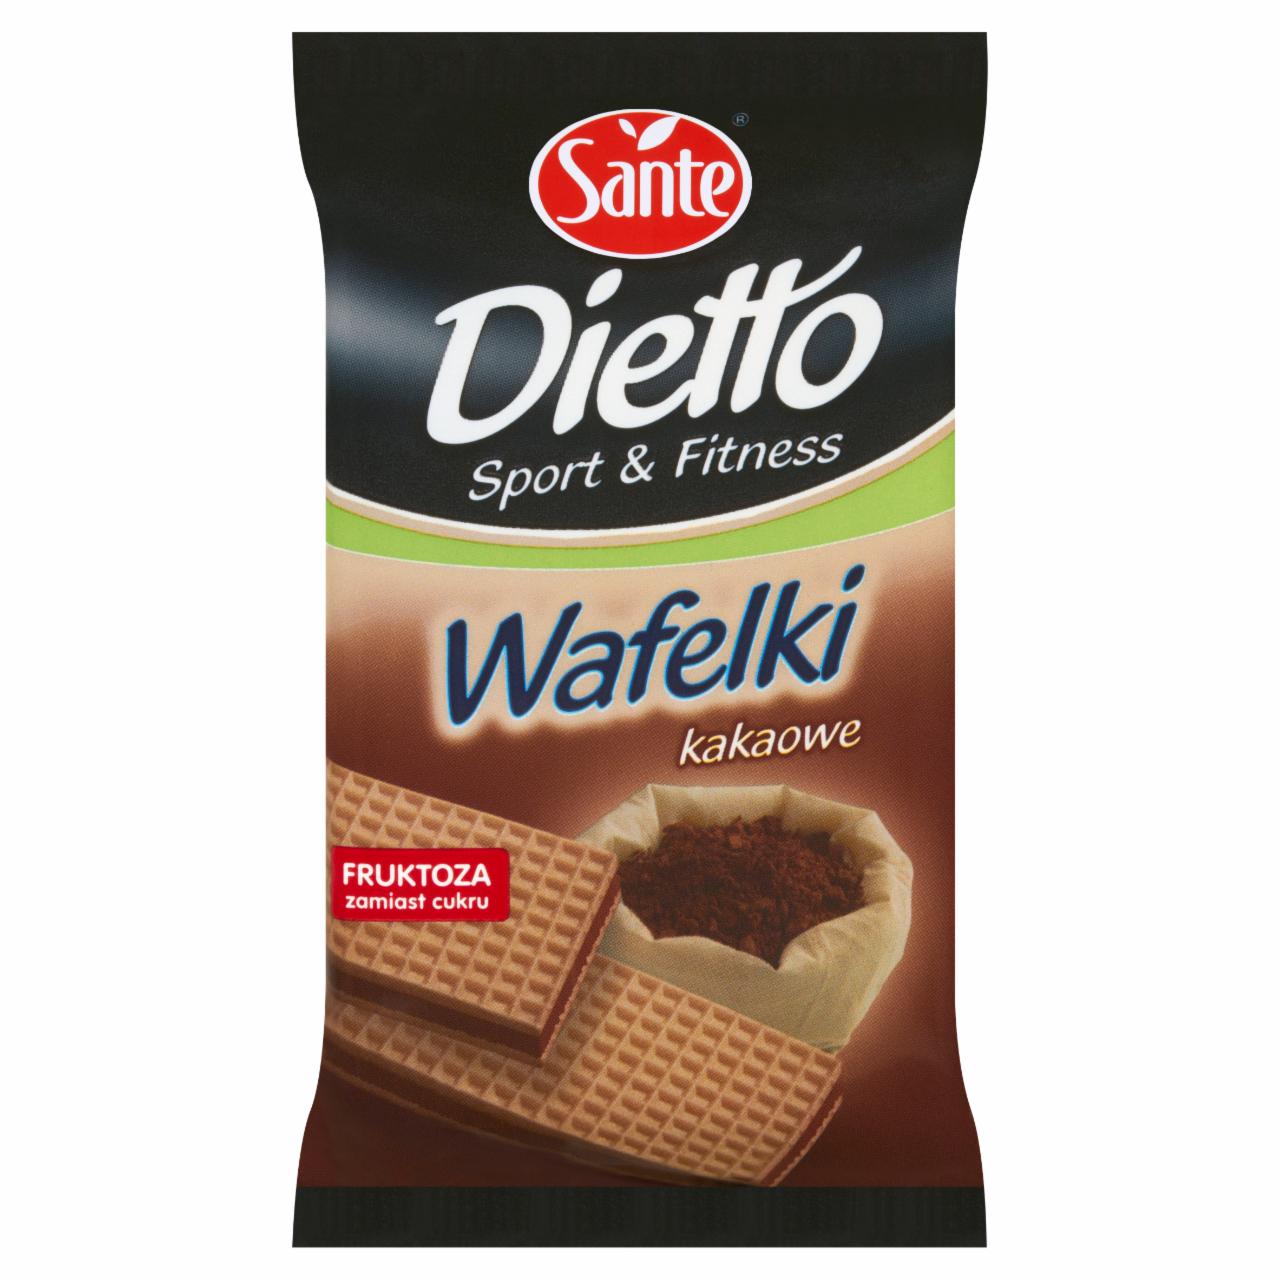 Zdjęcia - Sante Dietto Sport and Fitness Wafelki kakaowe 85 g